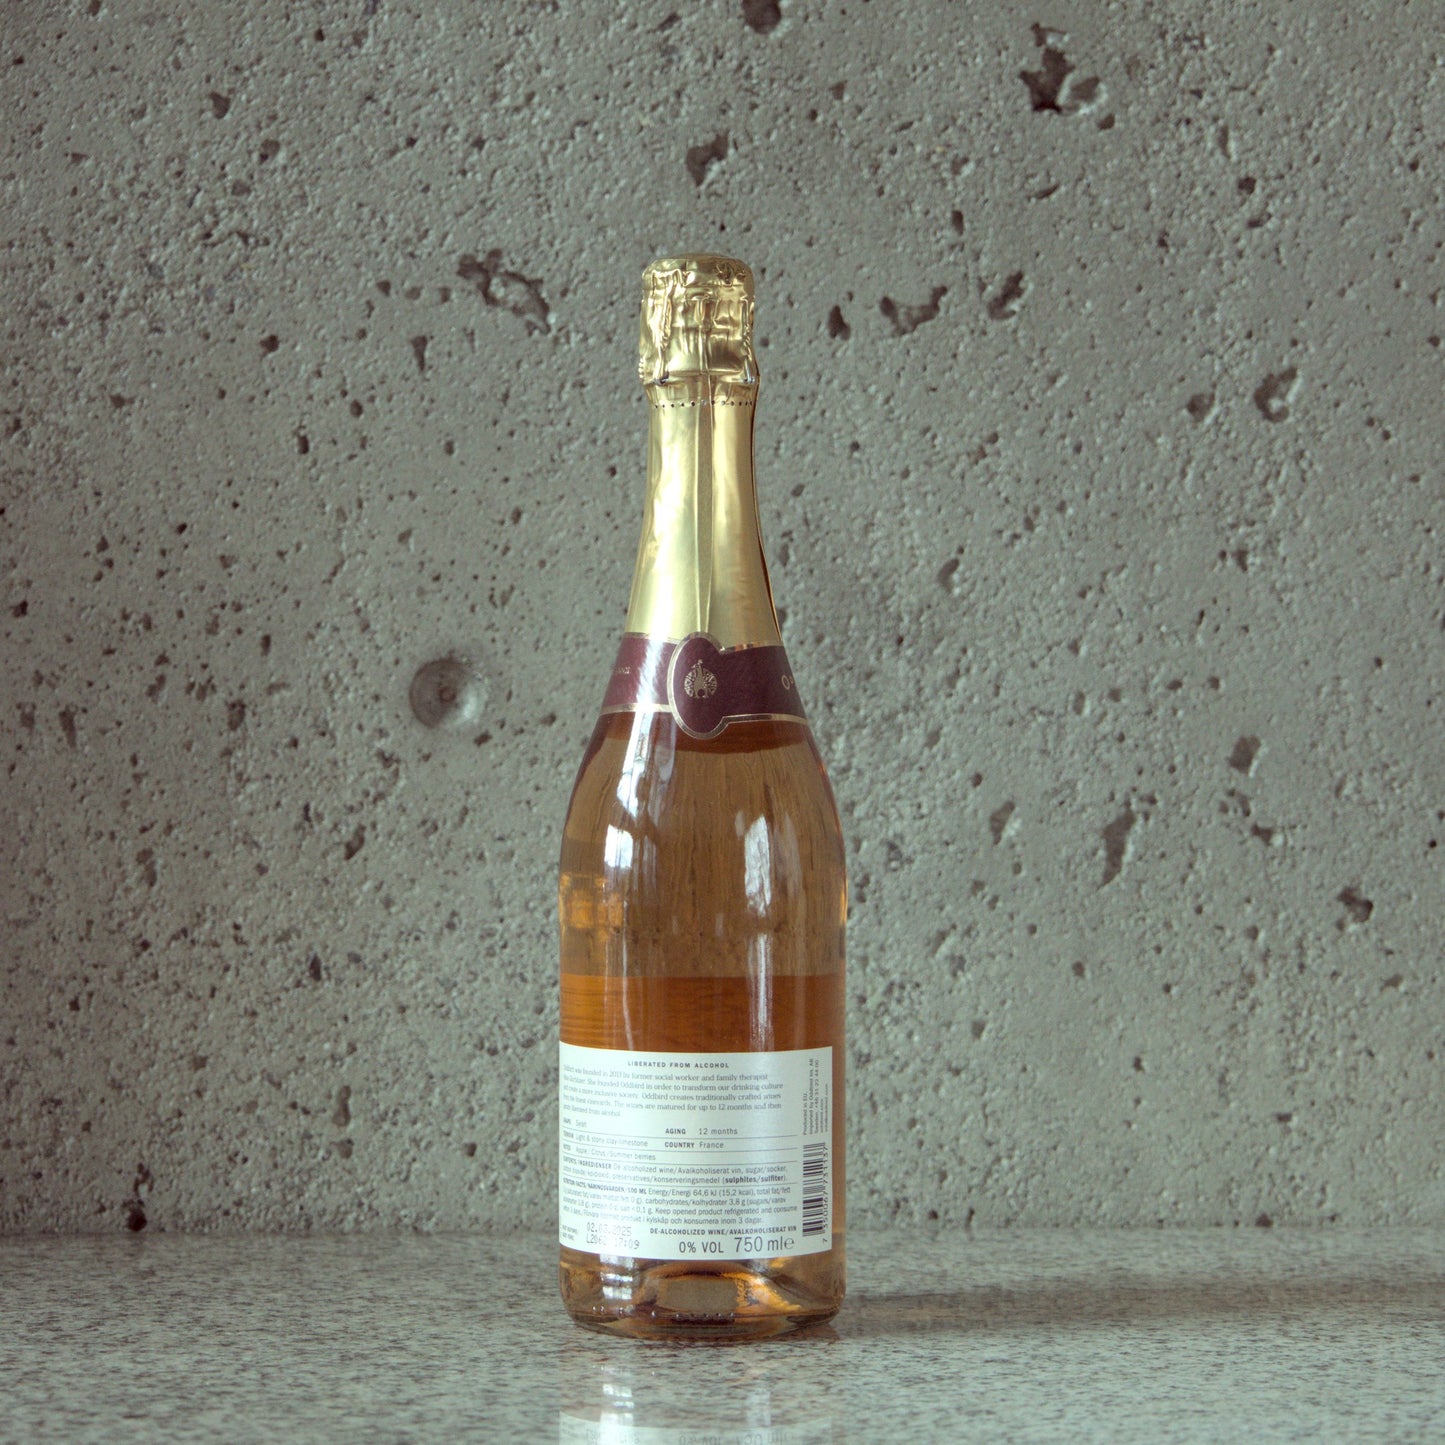 Oddbird 'Sparkling Rosé' De-alcoholized Sparkling Wine